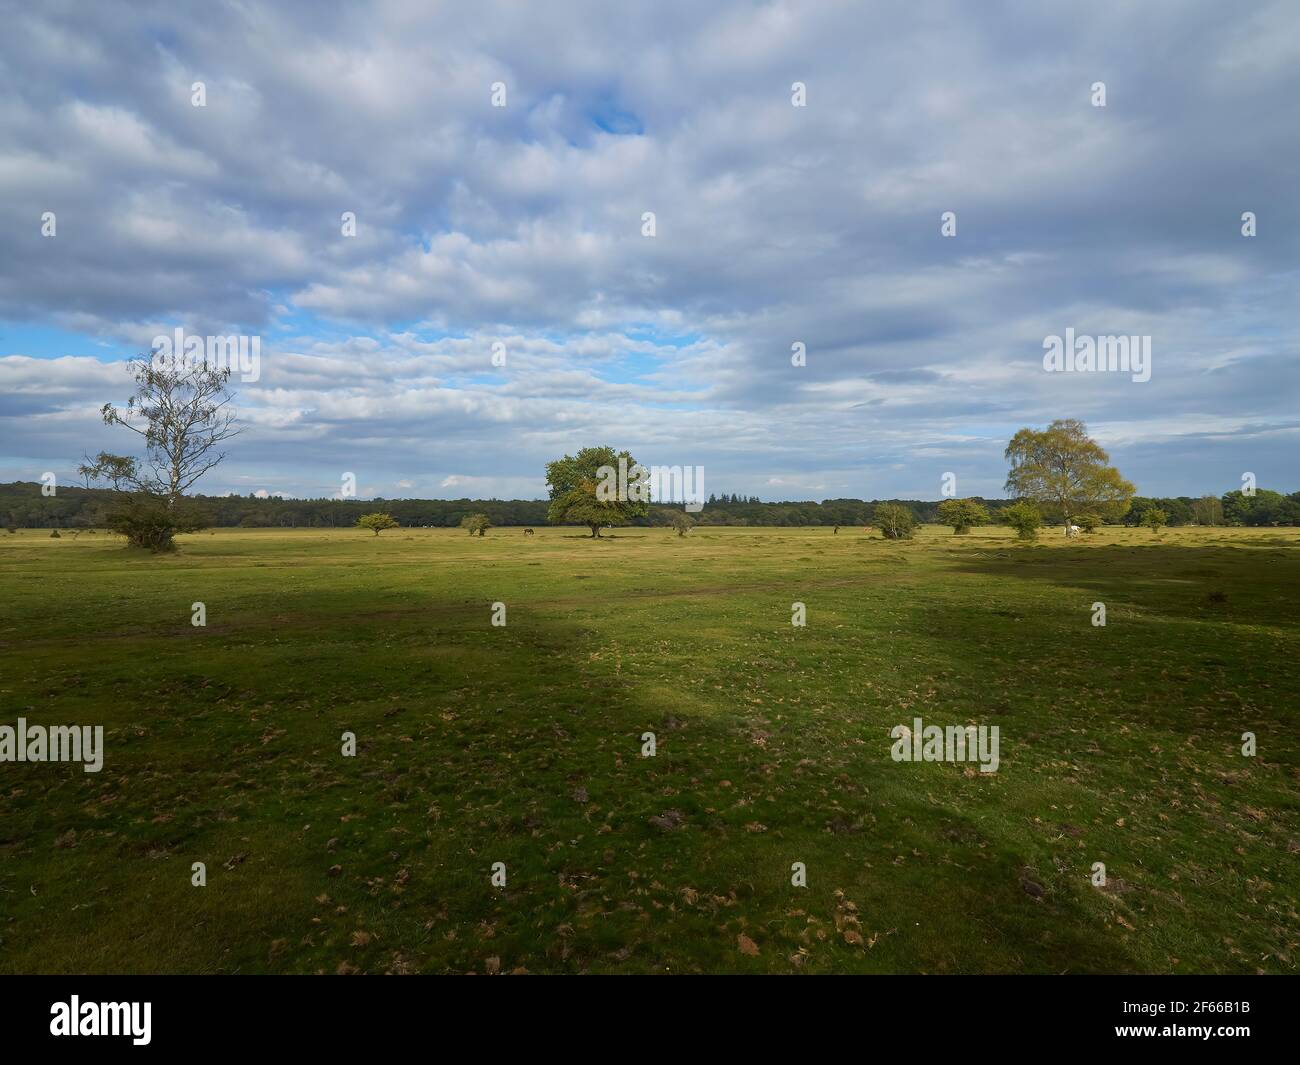 Una vista estesa di un campo con tre alberi simmetrici e maturi, foglie autunnali e ombre nuvolose dalla luce solare brillante. Il cielo è sospeso su un cielo enorme Foto Stock